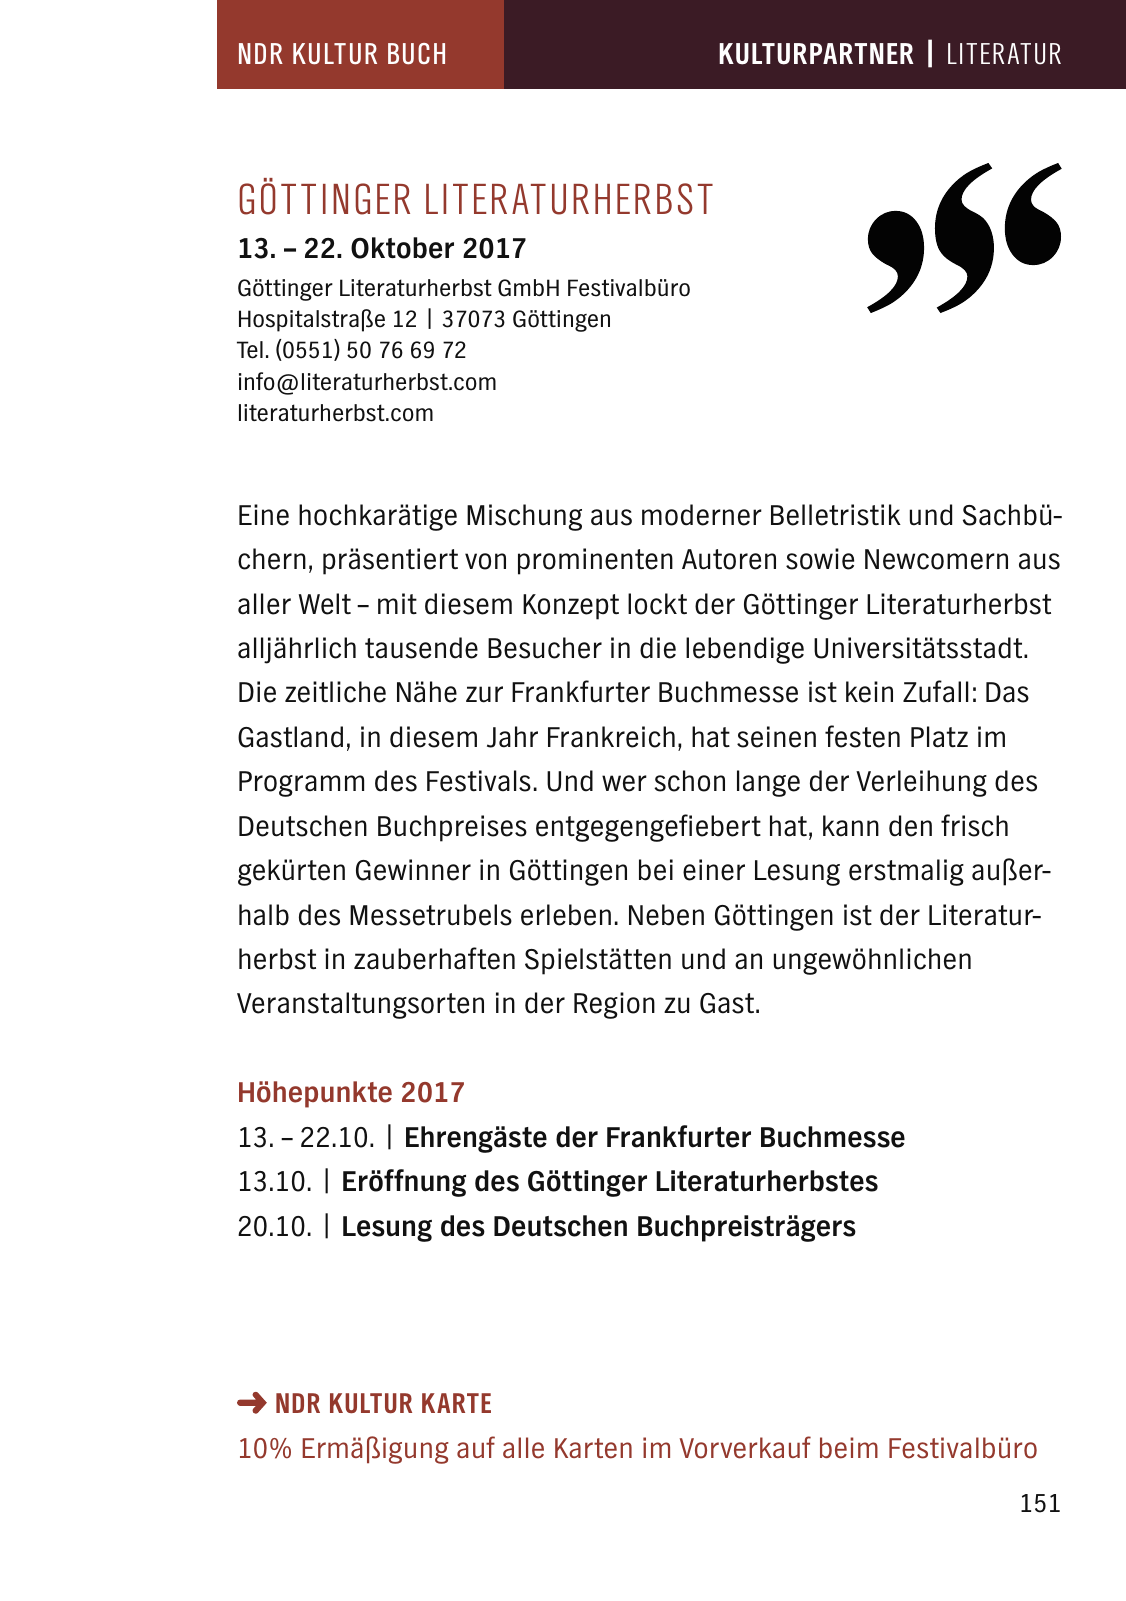 Vorschau NDR Kultur Buch 2017 Seite 153